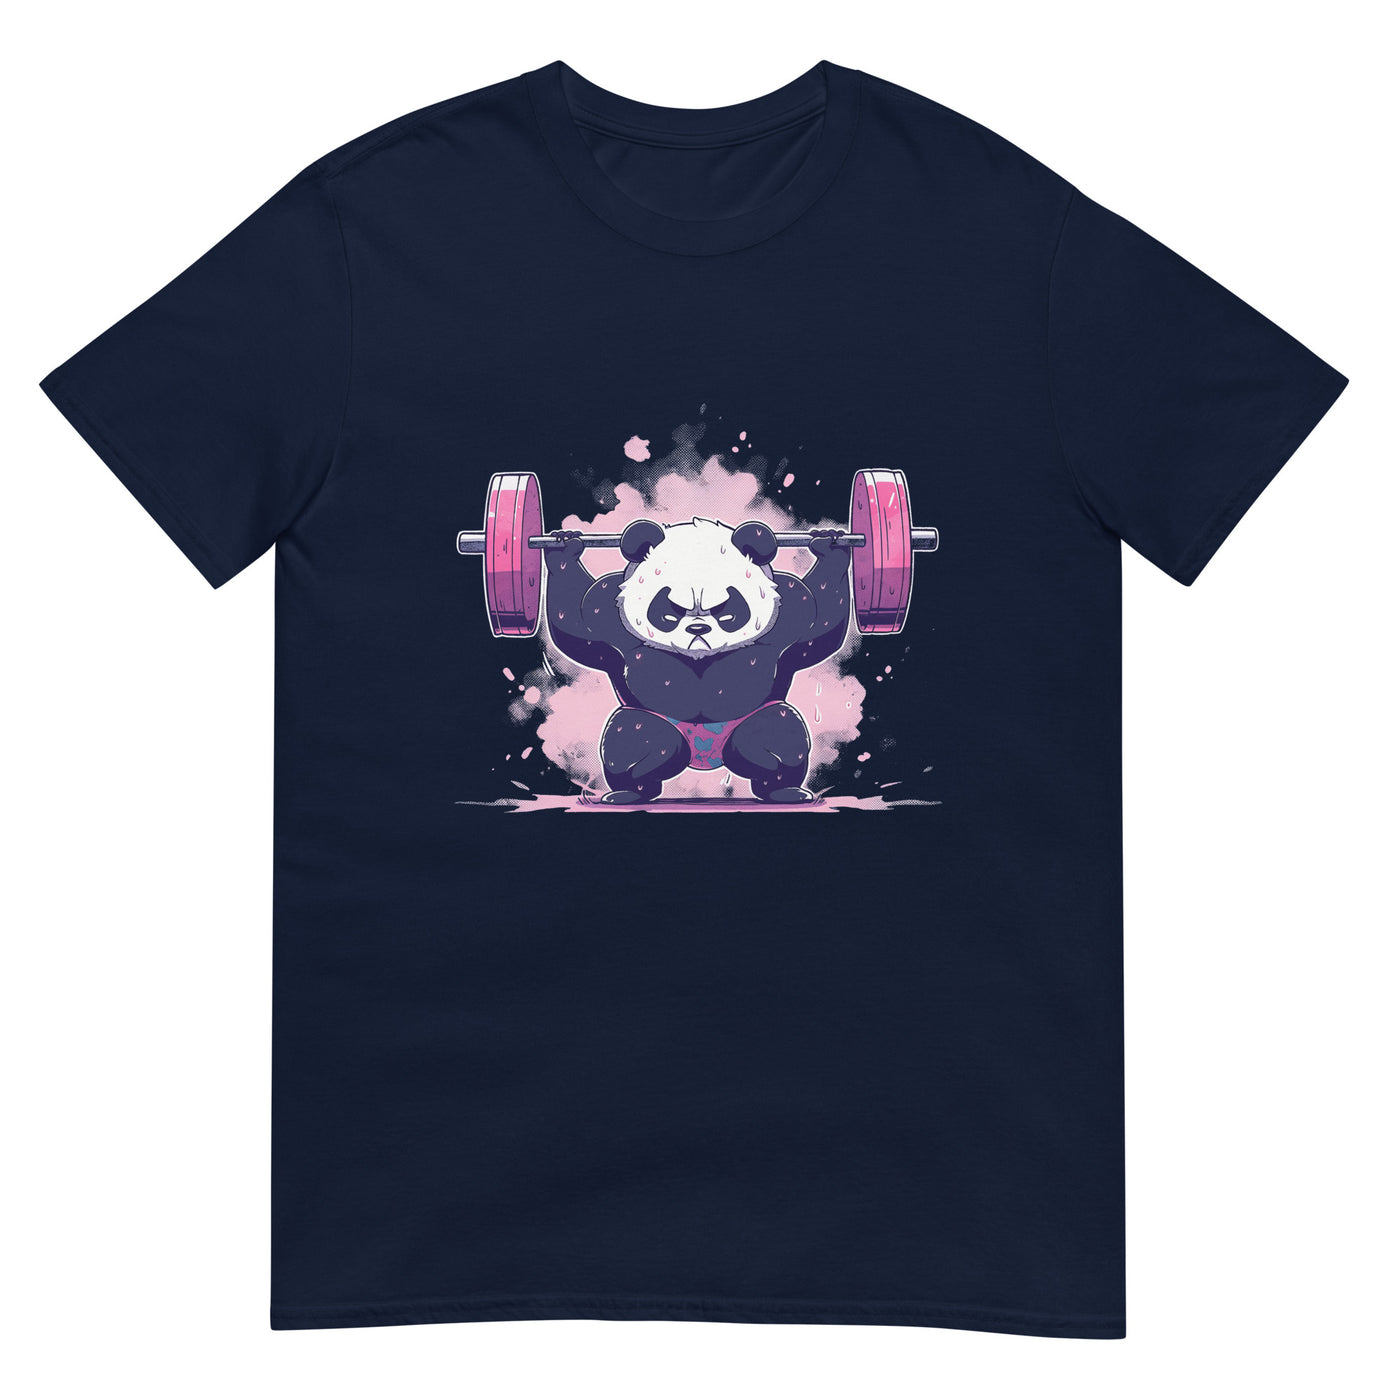 Panda macht Kniebeugen mit schwerer Langhantel in pinker Farbe - Herren T-Shirt Other_Niches xxx yyy zzz Navy